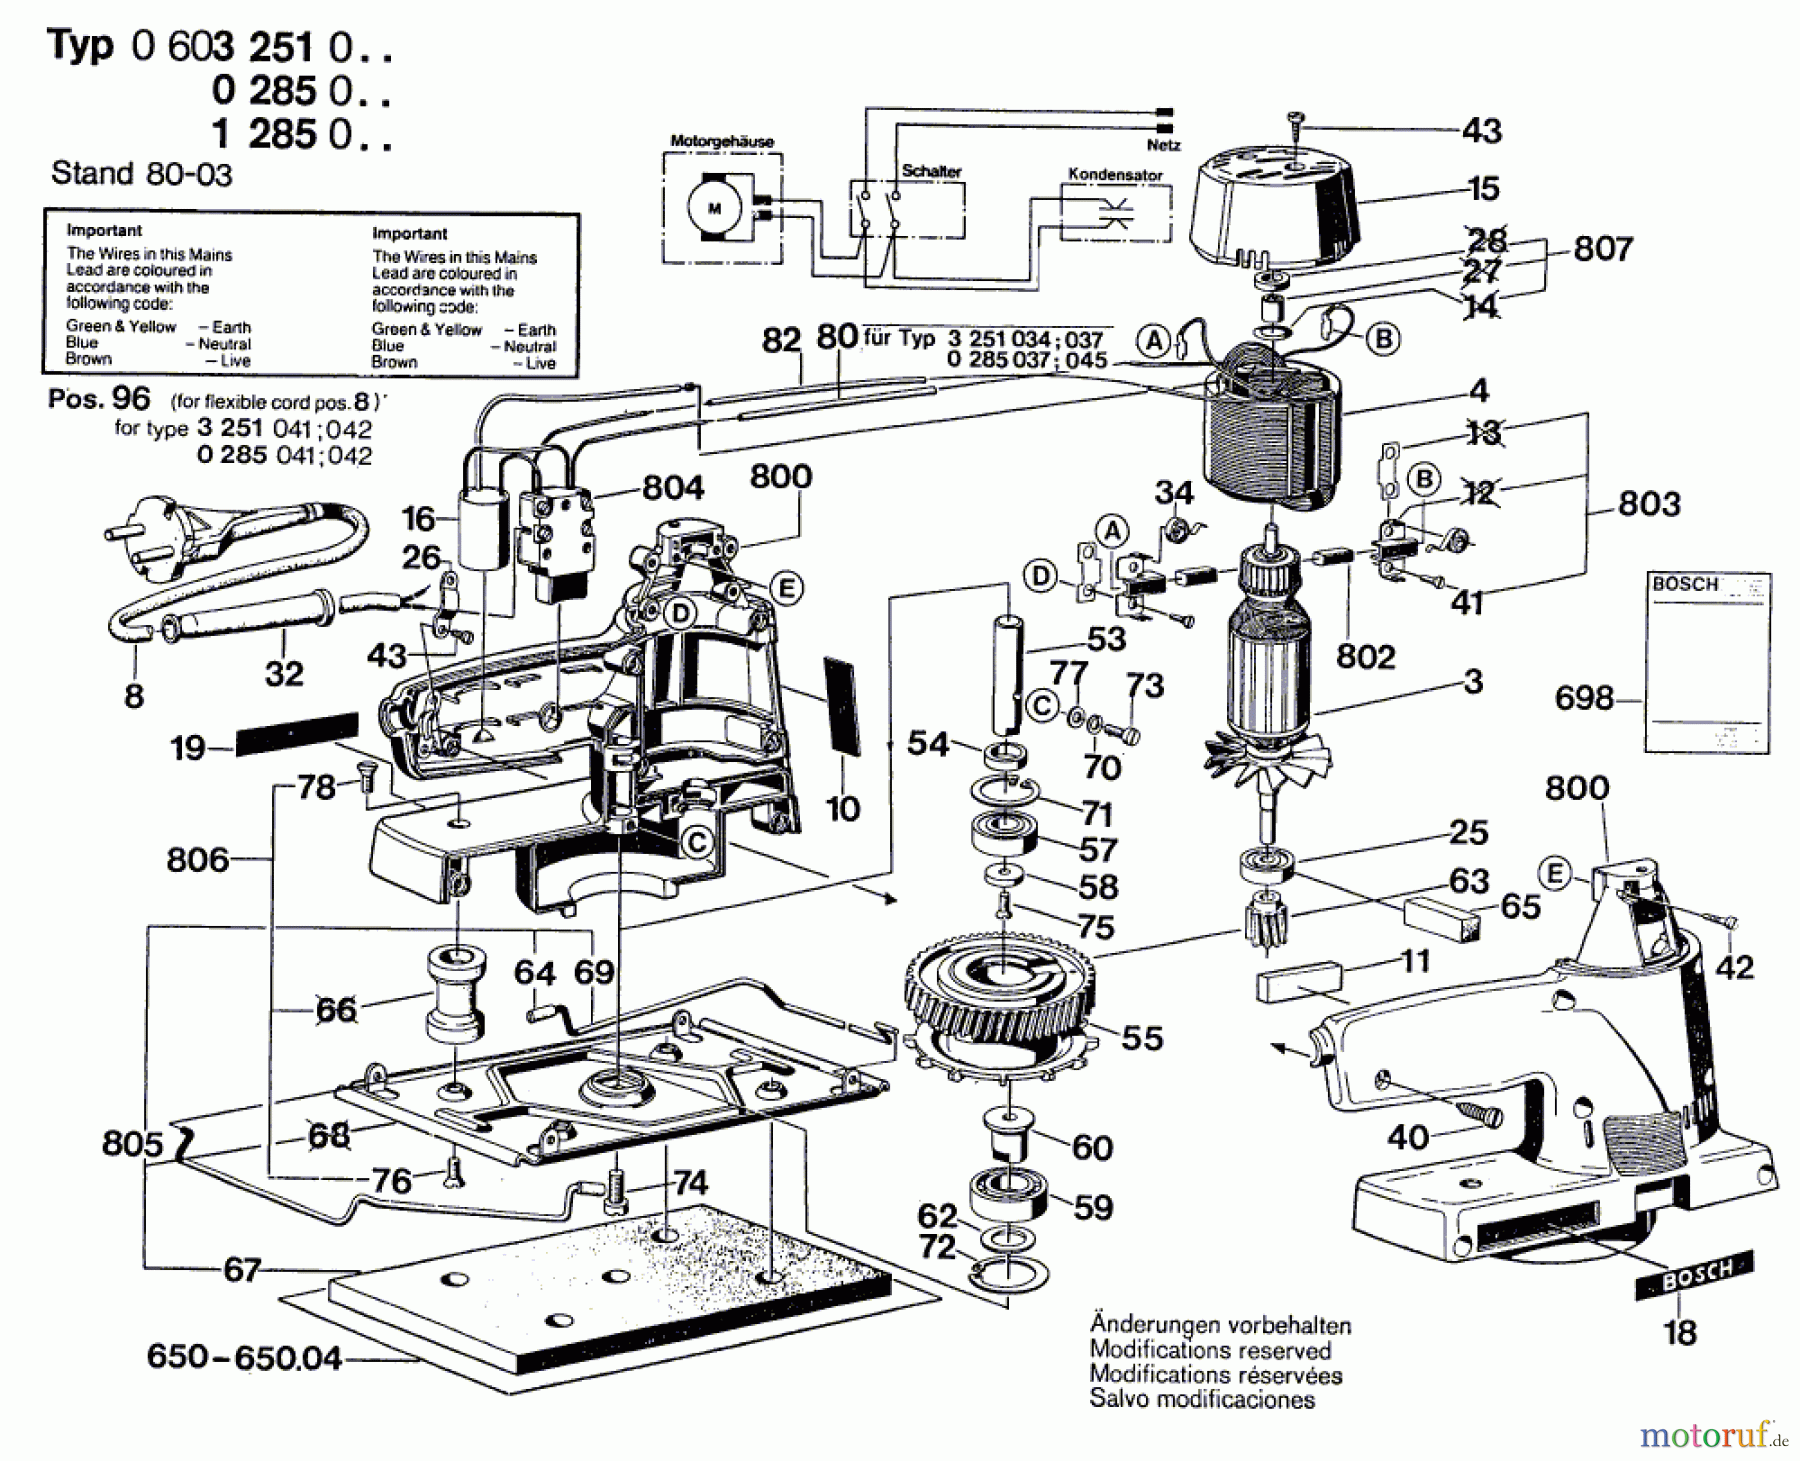  Bosch Werkzeug Schwingschleifer ---- Seite 1